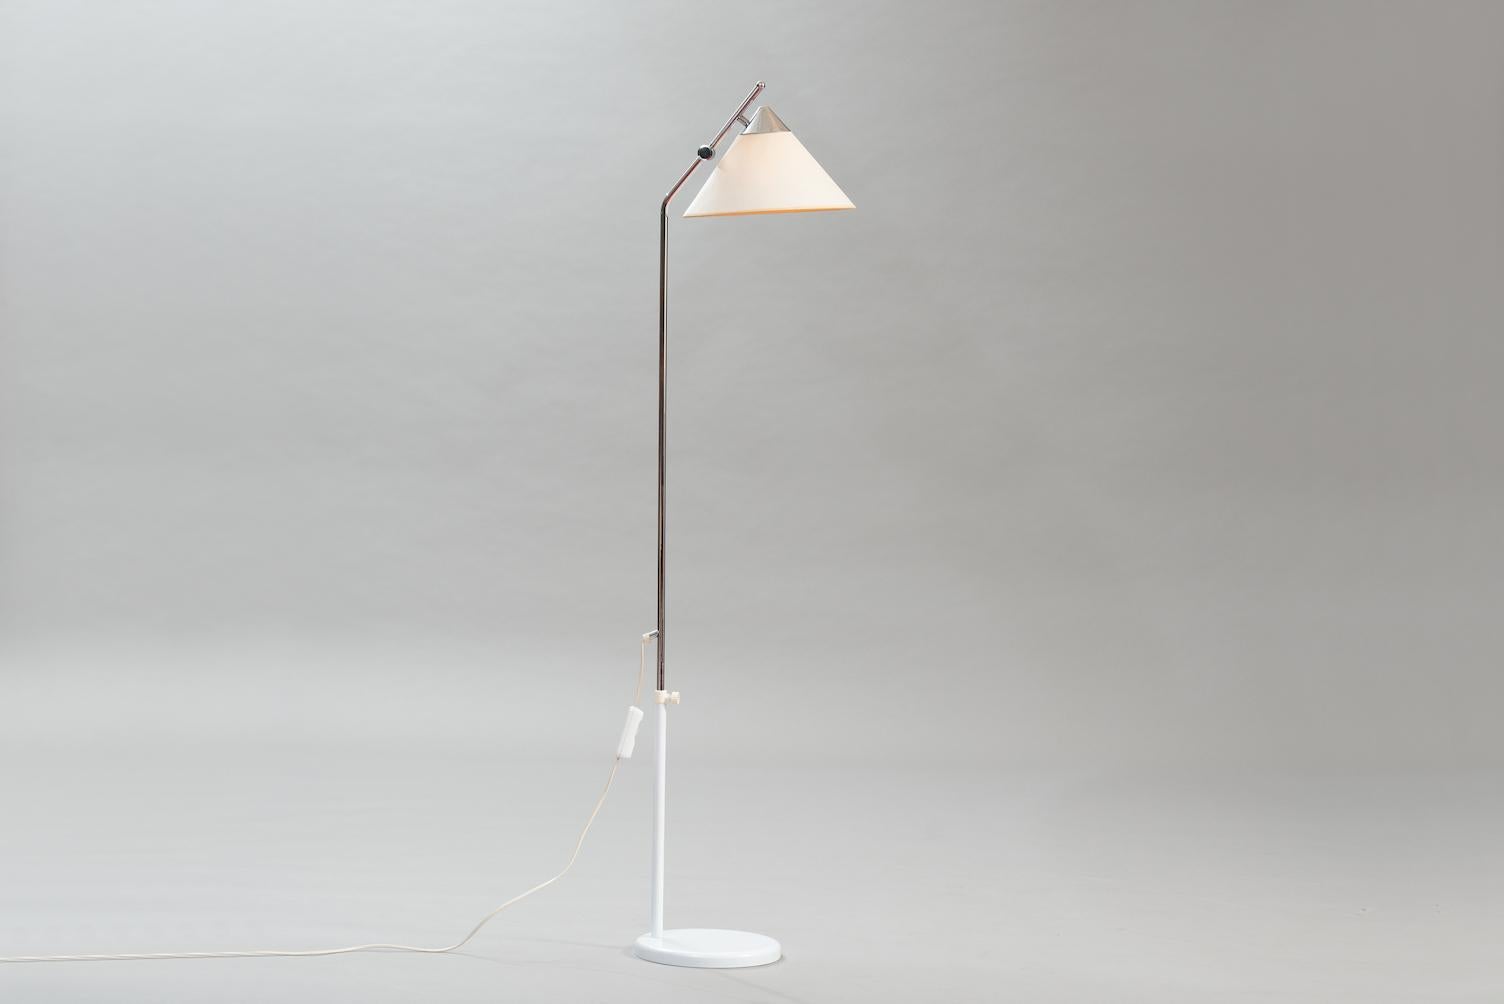 Lampadaire réglable en chrome et laqué blanc, de style Mid-Century Modern.
Diam. 29 cm (abat-jour), H 160 cm, P 33 cm.